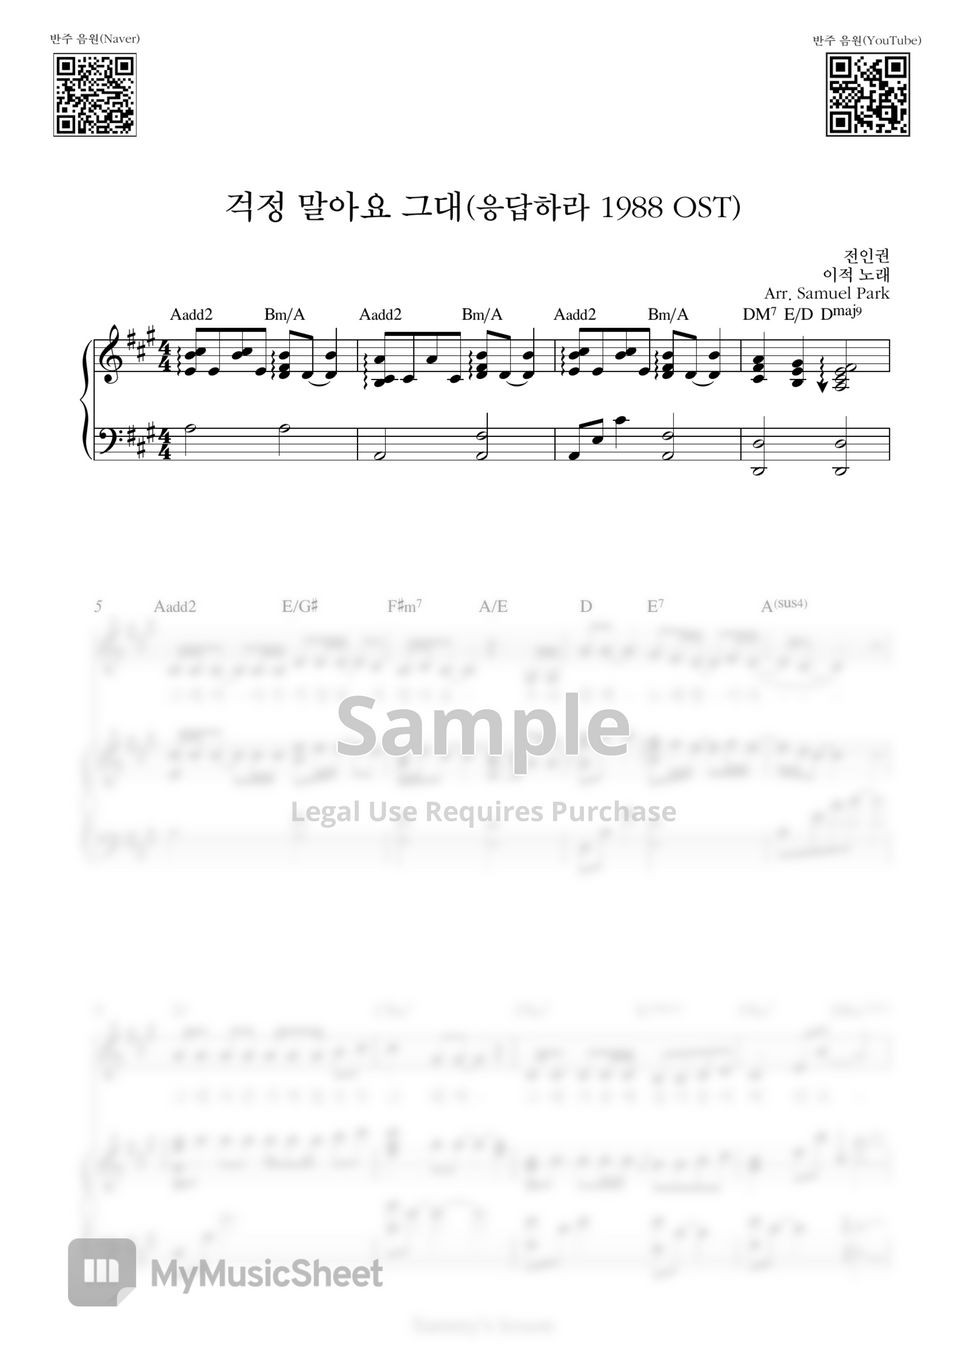 이적 - 걱정 말아요 그대(Don't Worry) 응답하라 1988 OST (Piano Cover) by Samuel Park